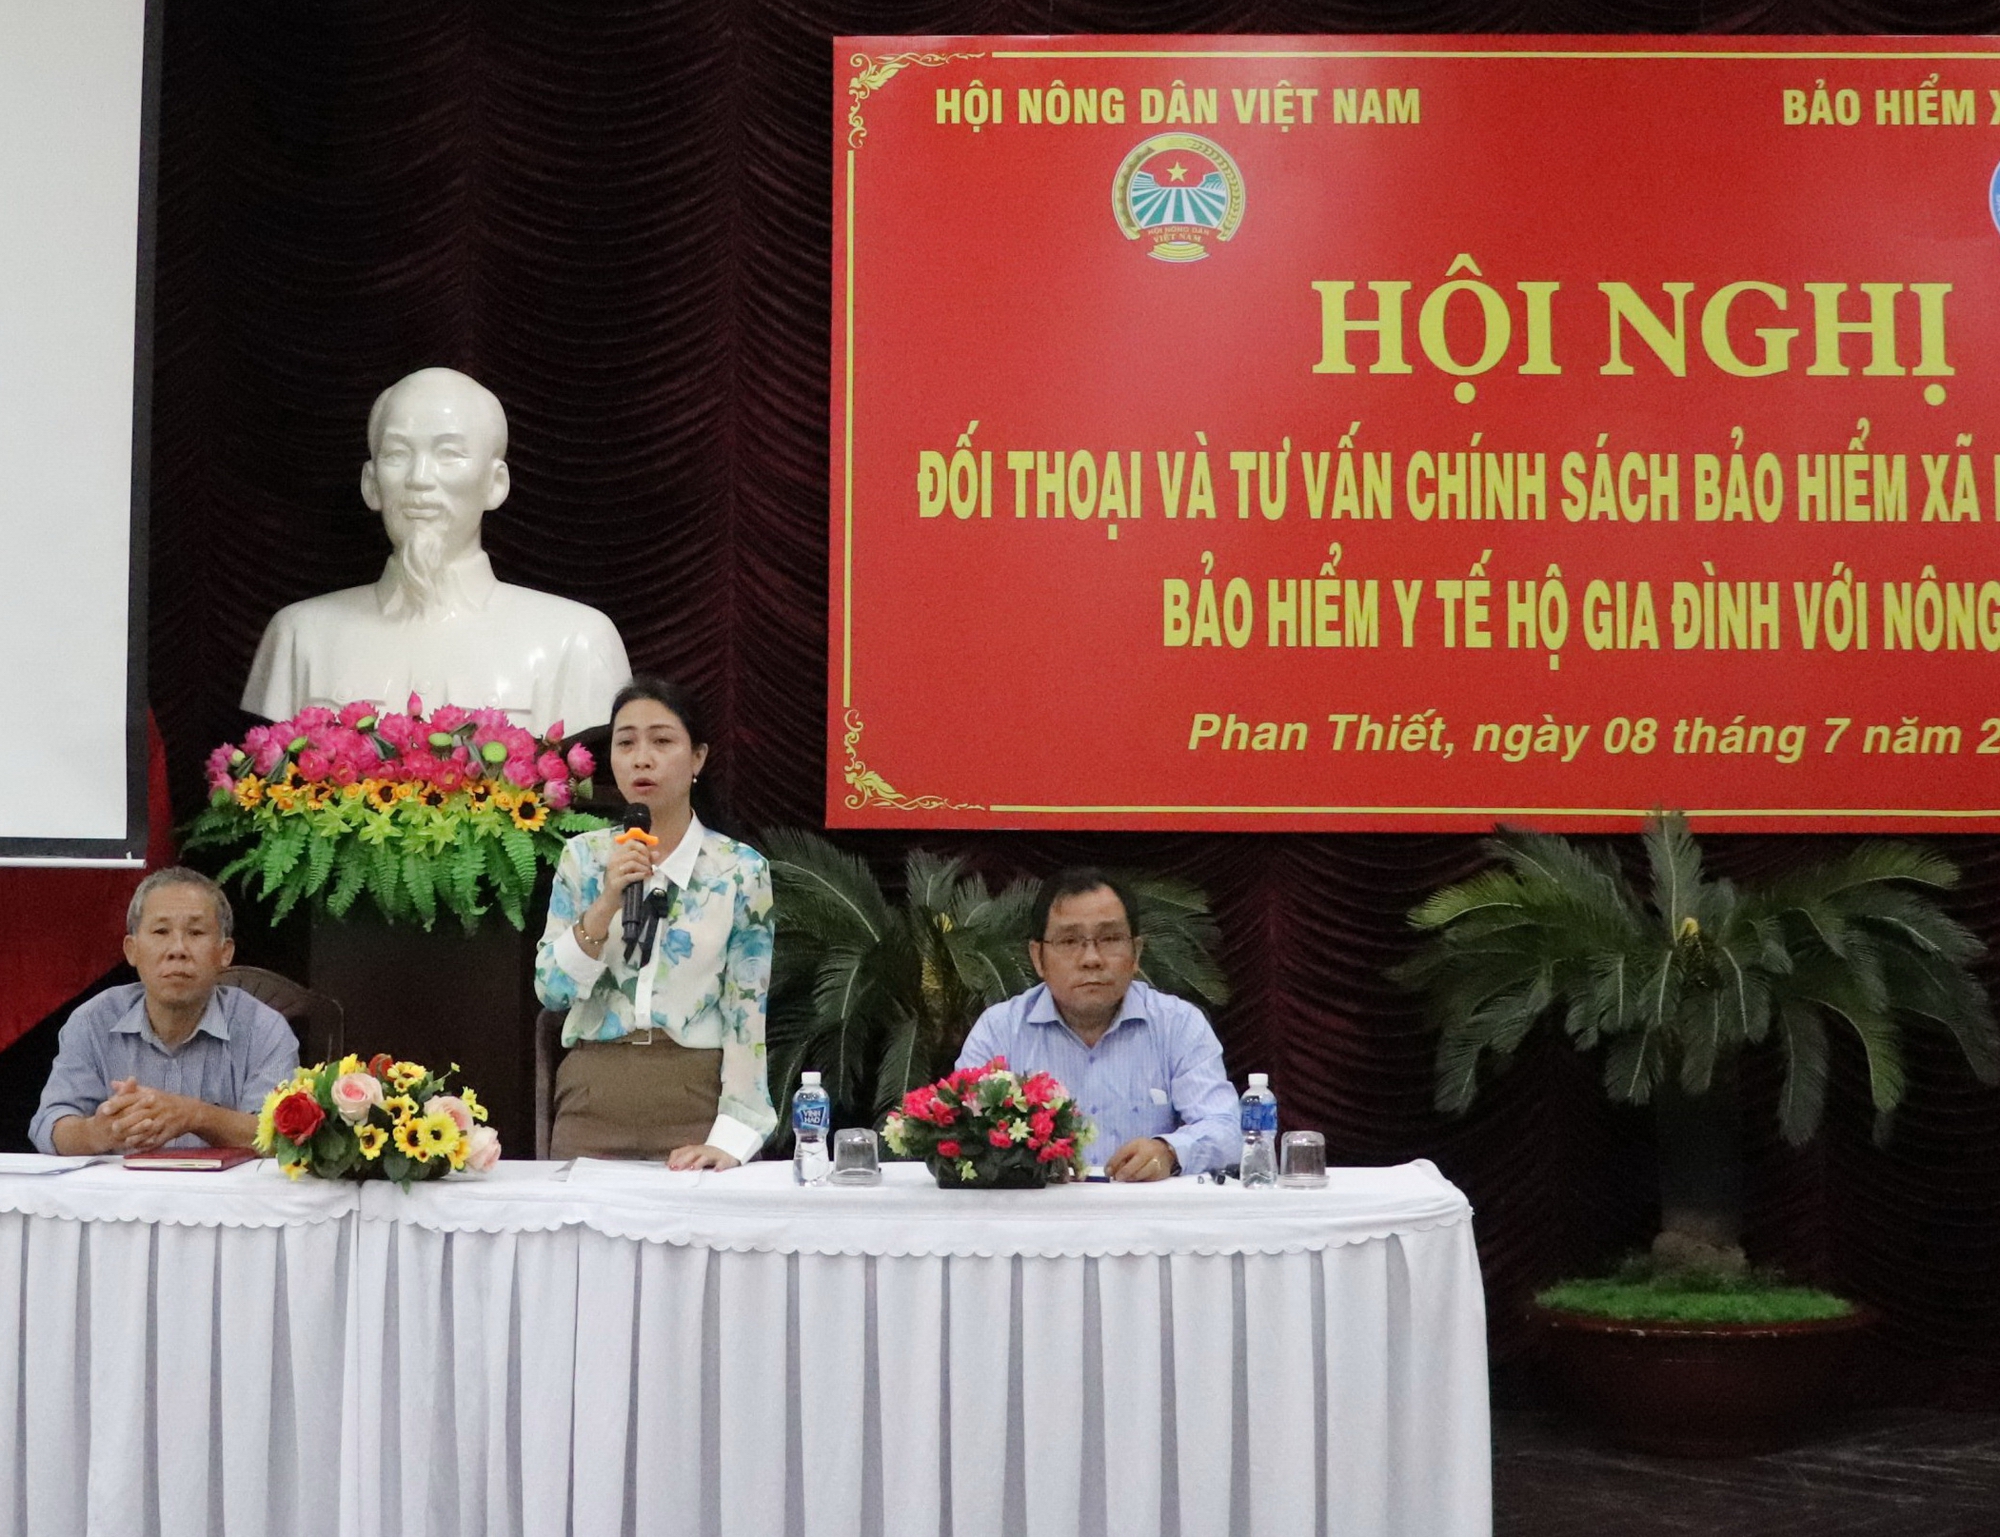 Bình Thuận: Nông dân đối thoại với ngành Bảo hiểm xã hội tự nguyện và bảo hiểm y tế  - Ảnh 1.